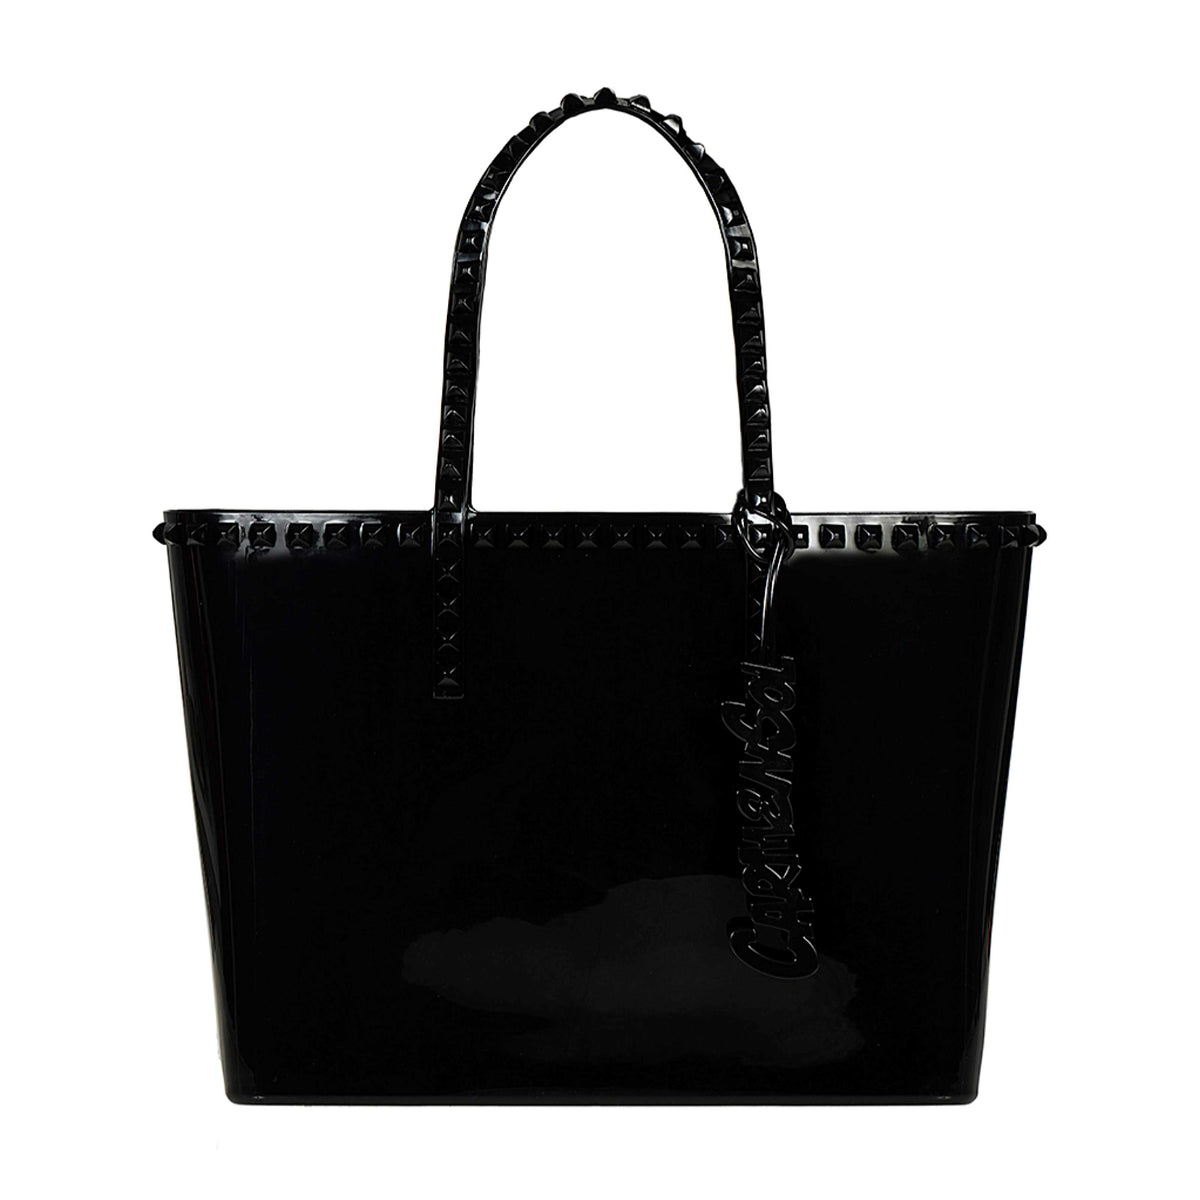 Black Seba studded jelly handbag from Carmen Sol